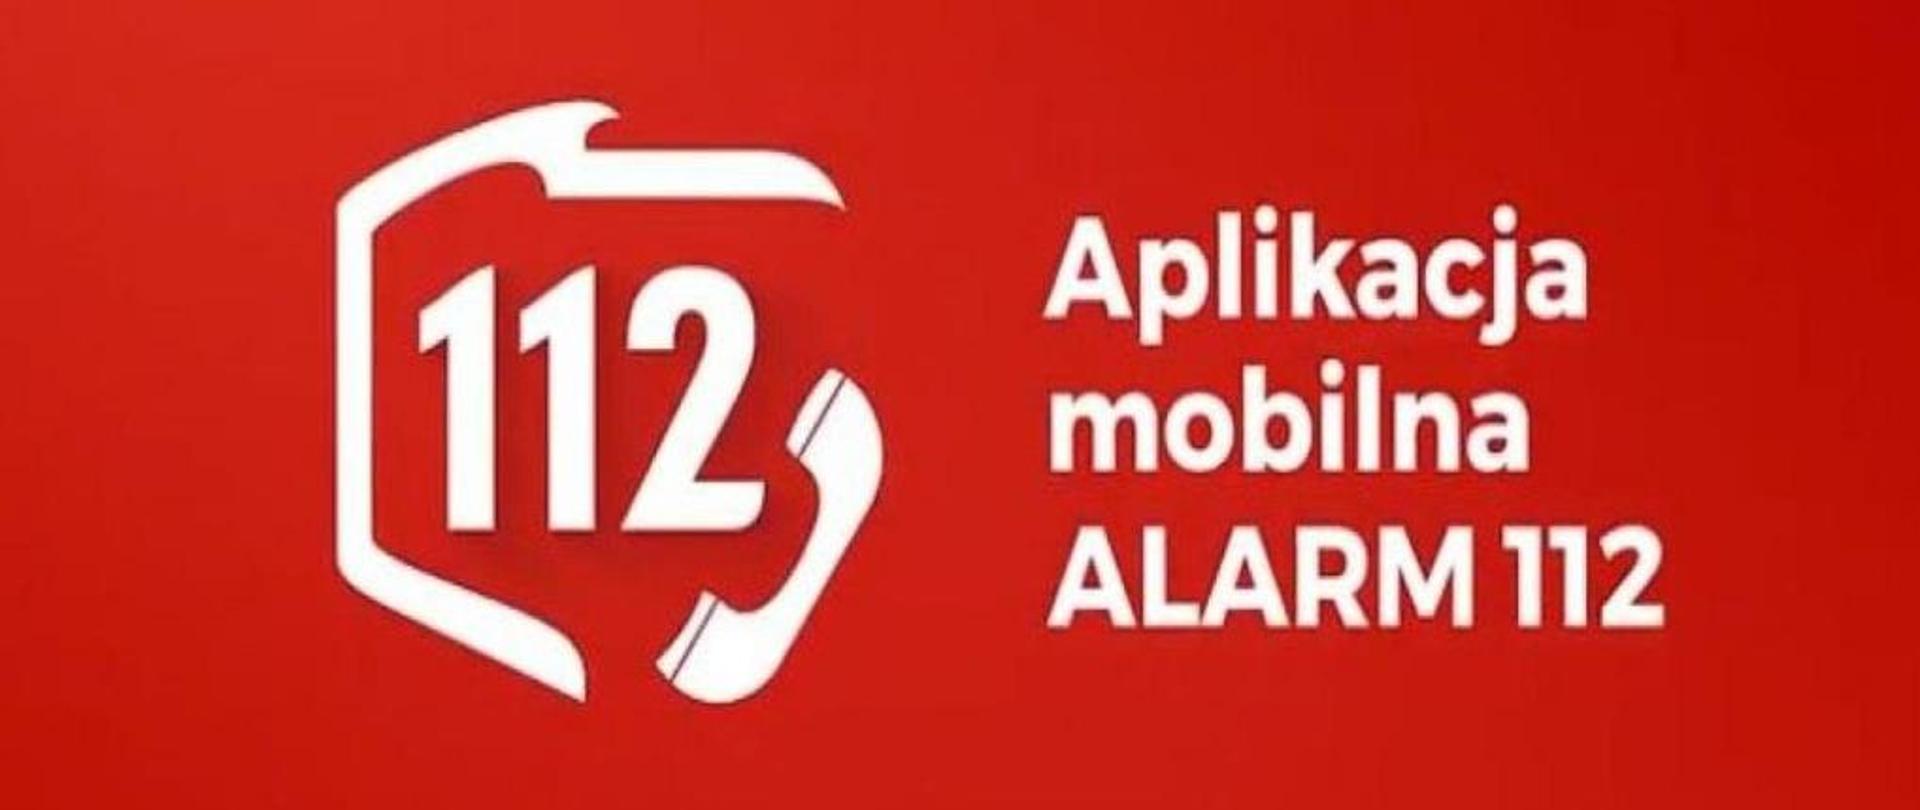 Aplikacja mobilna Alarm112, zarys granic Polski, a wewnątrz zarysu numer ratunkowy 112